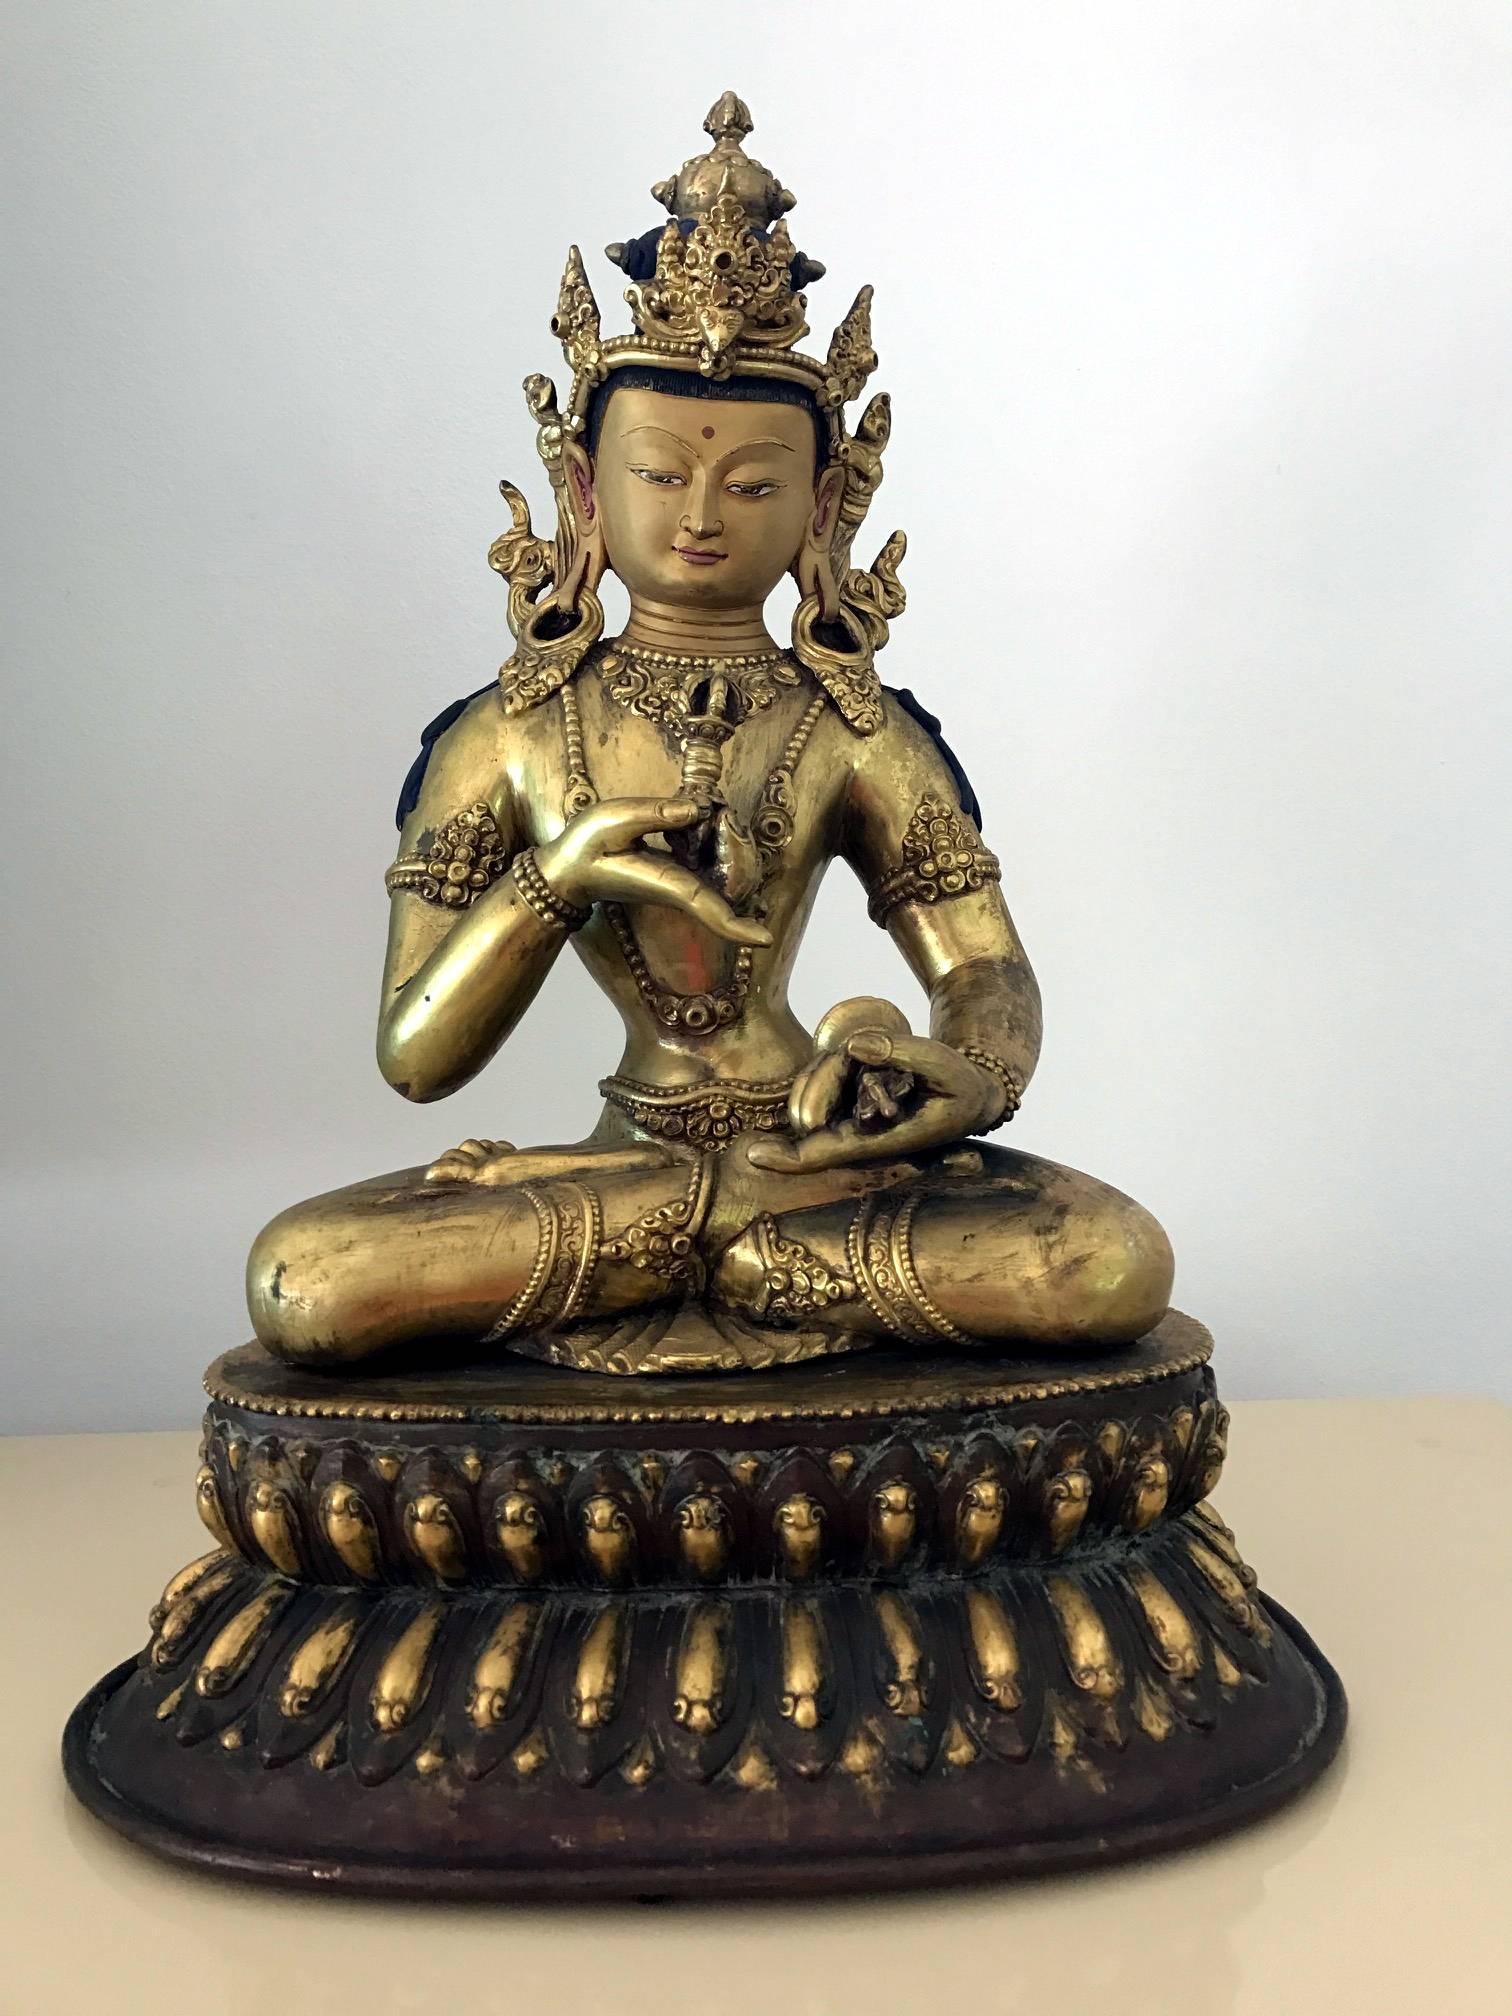 Angeboten wird eine beeindruckend große und fein gegossene sino-tibetische vergoldete Antikbronzestatue des Vajrasattva Bodhisattva, um das 19. Jahrhundert, vielleicht auch früher. Die Gottheit ist im Lotussitz dargestellt und trägt ein mit Juwelen